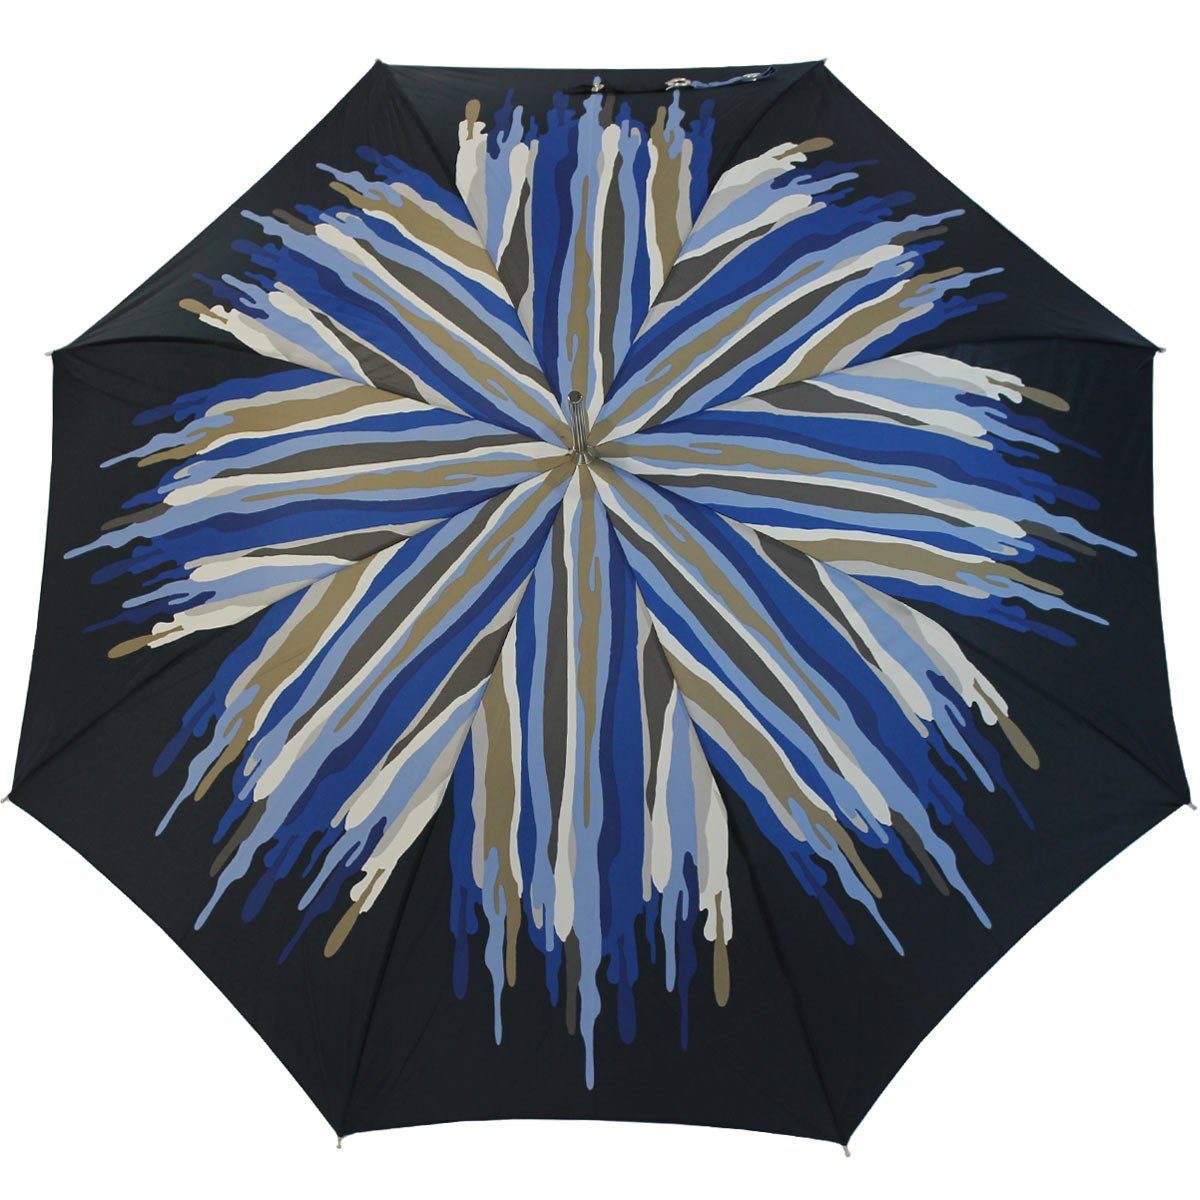 extravagant für Schirm besondere Auf-Automatik, Auftritt den Langregenschirm großen der bedruckter blau doppler® Damenschirm